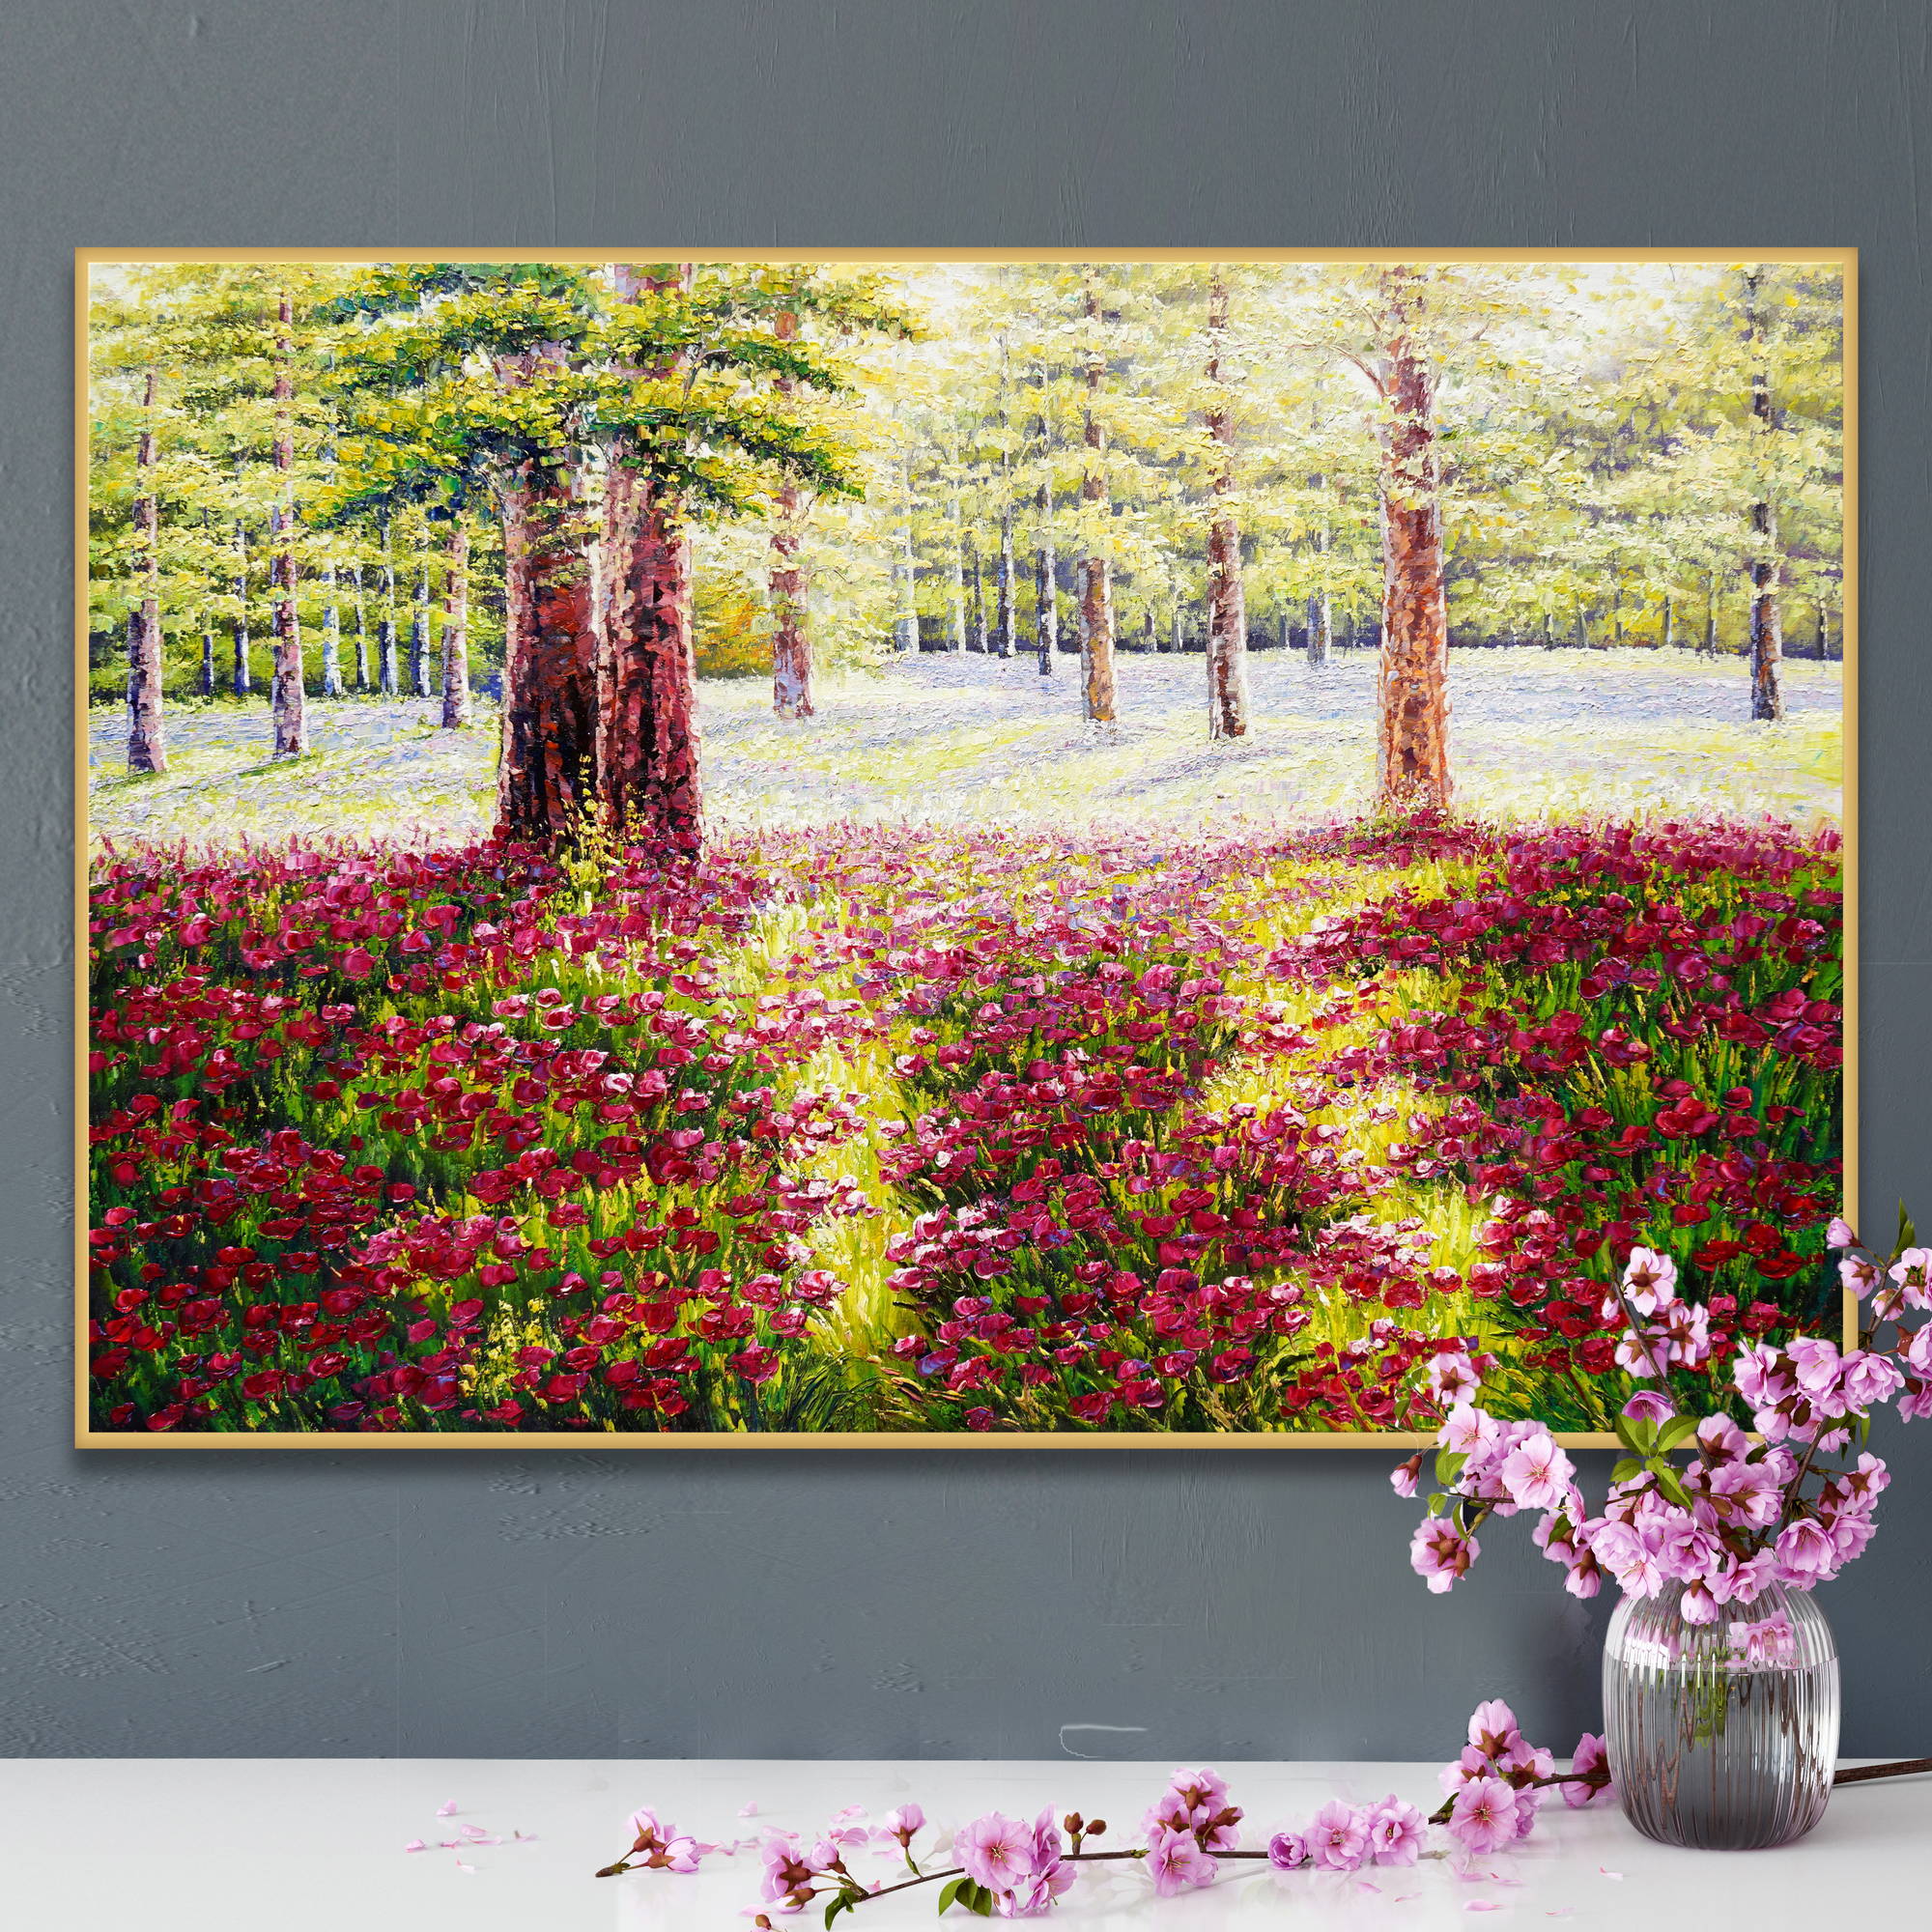 Quadro di un bosco soleggiato con fiori rossi in primo piano e alberi verdi sullo sfondo